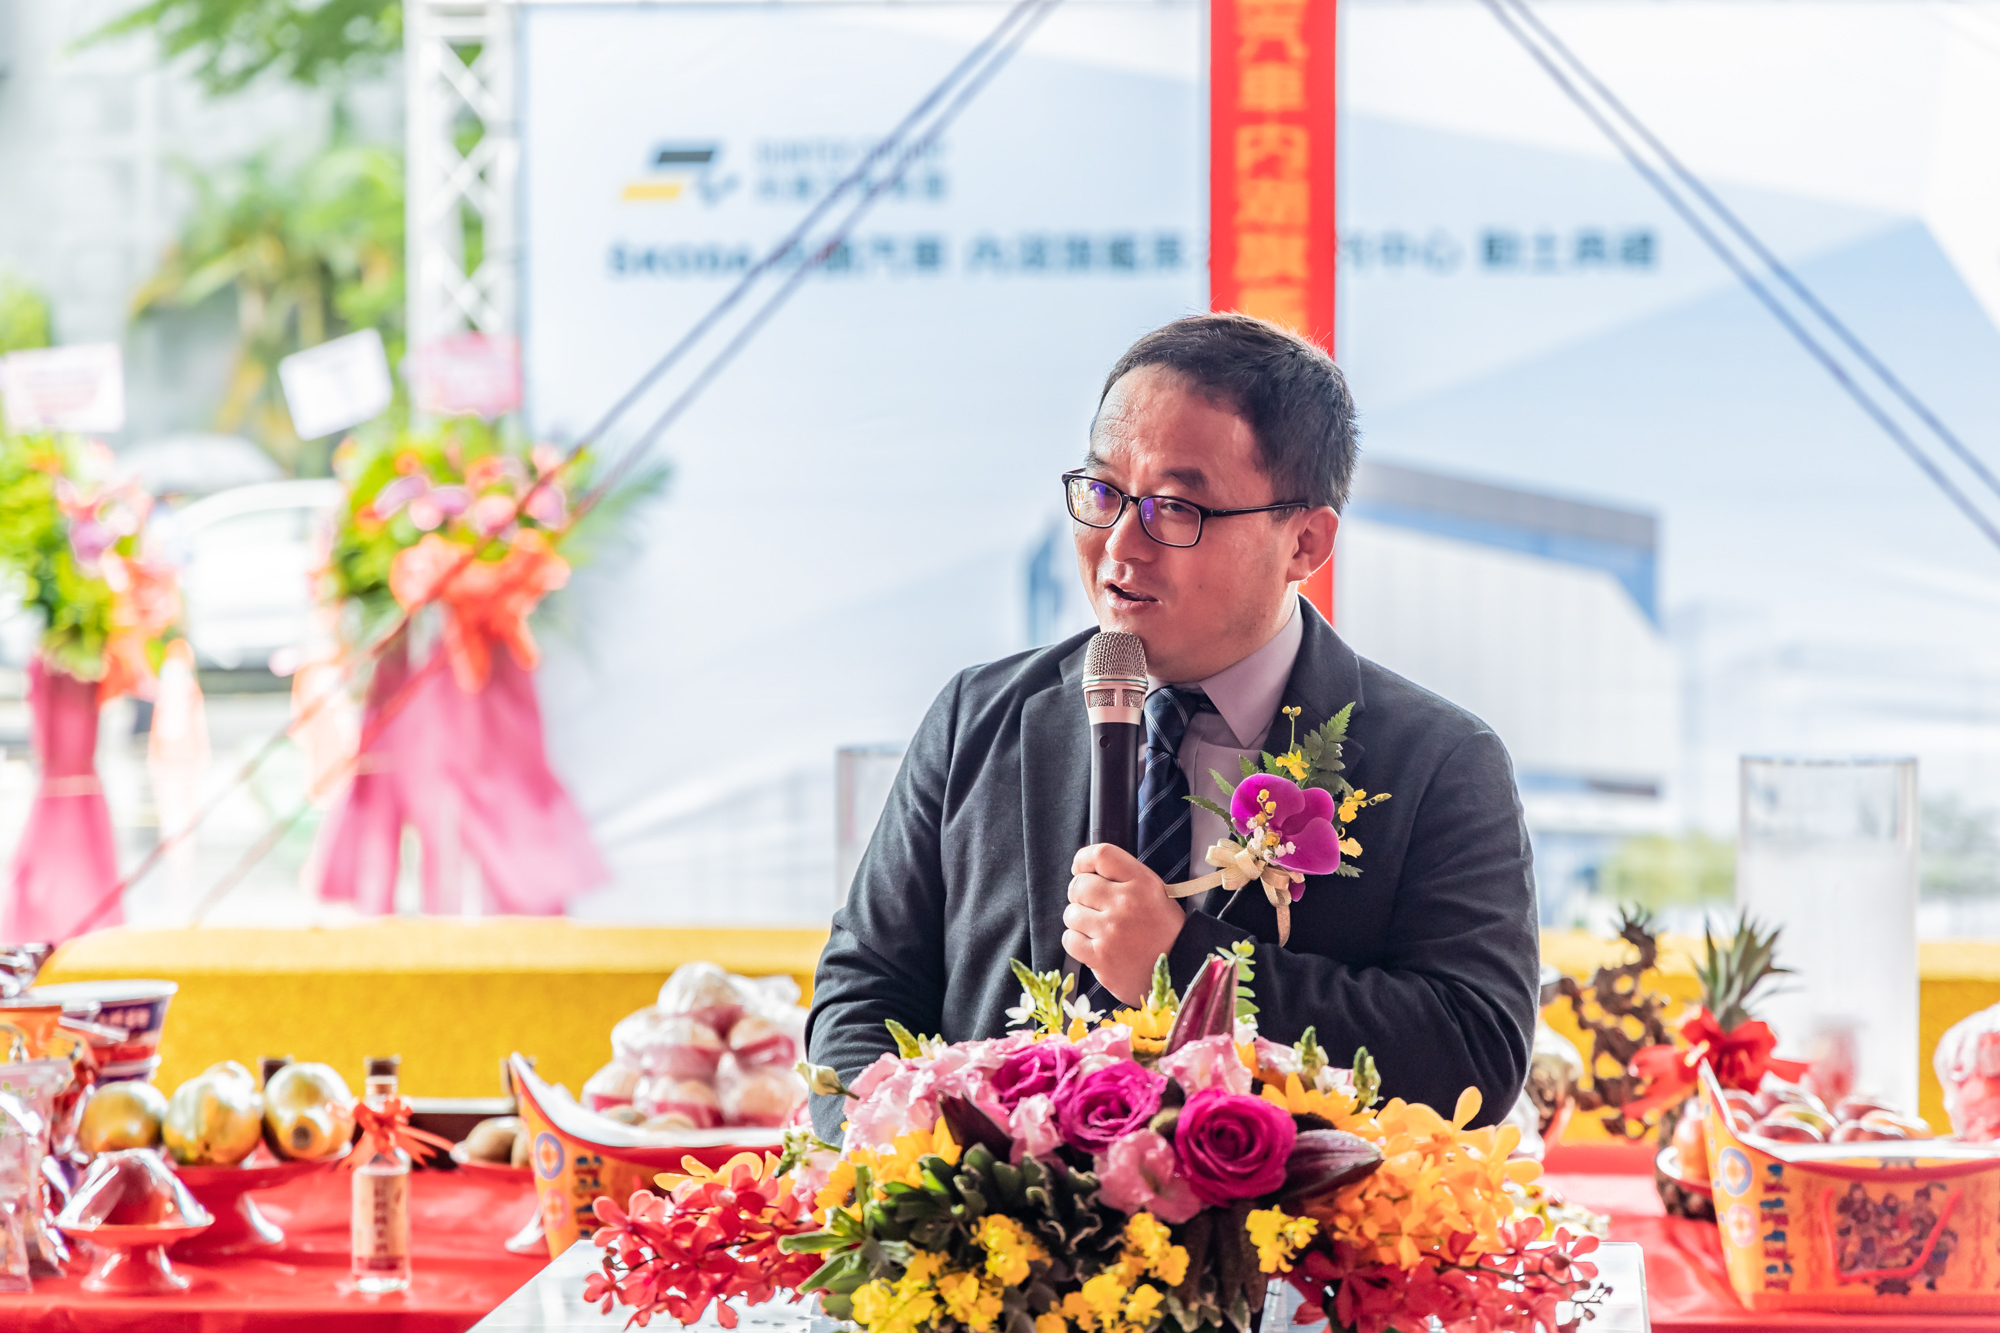 尚騰汽車集團執行長吳睿弘宣告打造全台最大旗艦多功能展示暨服務中心。